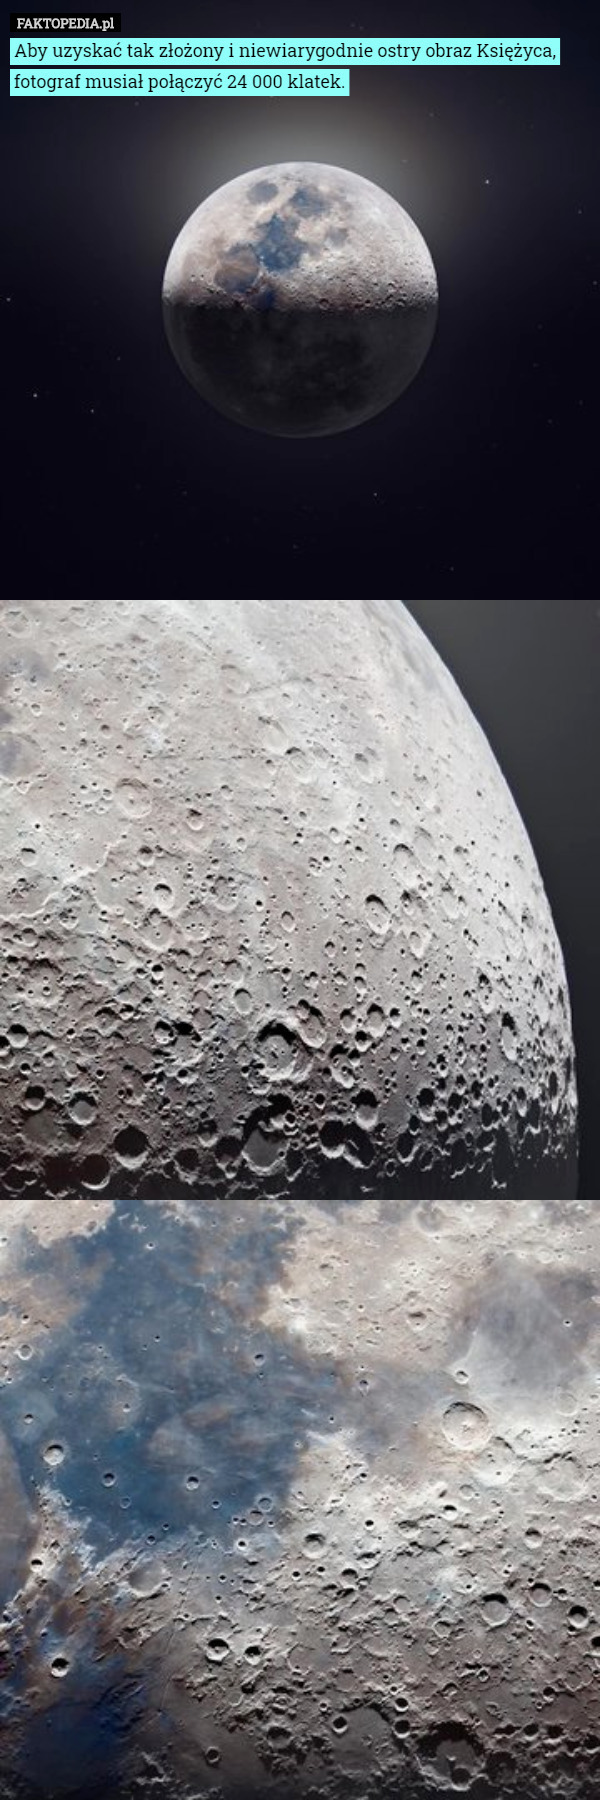 Aby uzyskać tak złożony i niewiarygodnie ostry obraz Księżyca, fotograf musiał połączyć 24 000 klatek. 